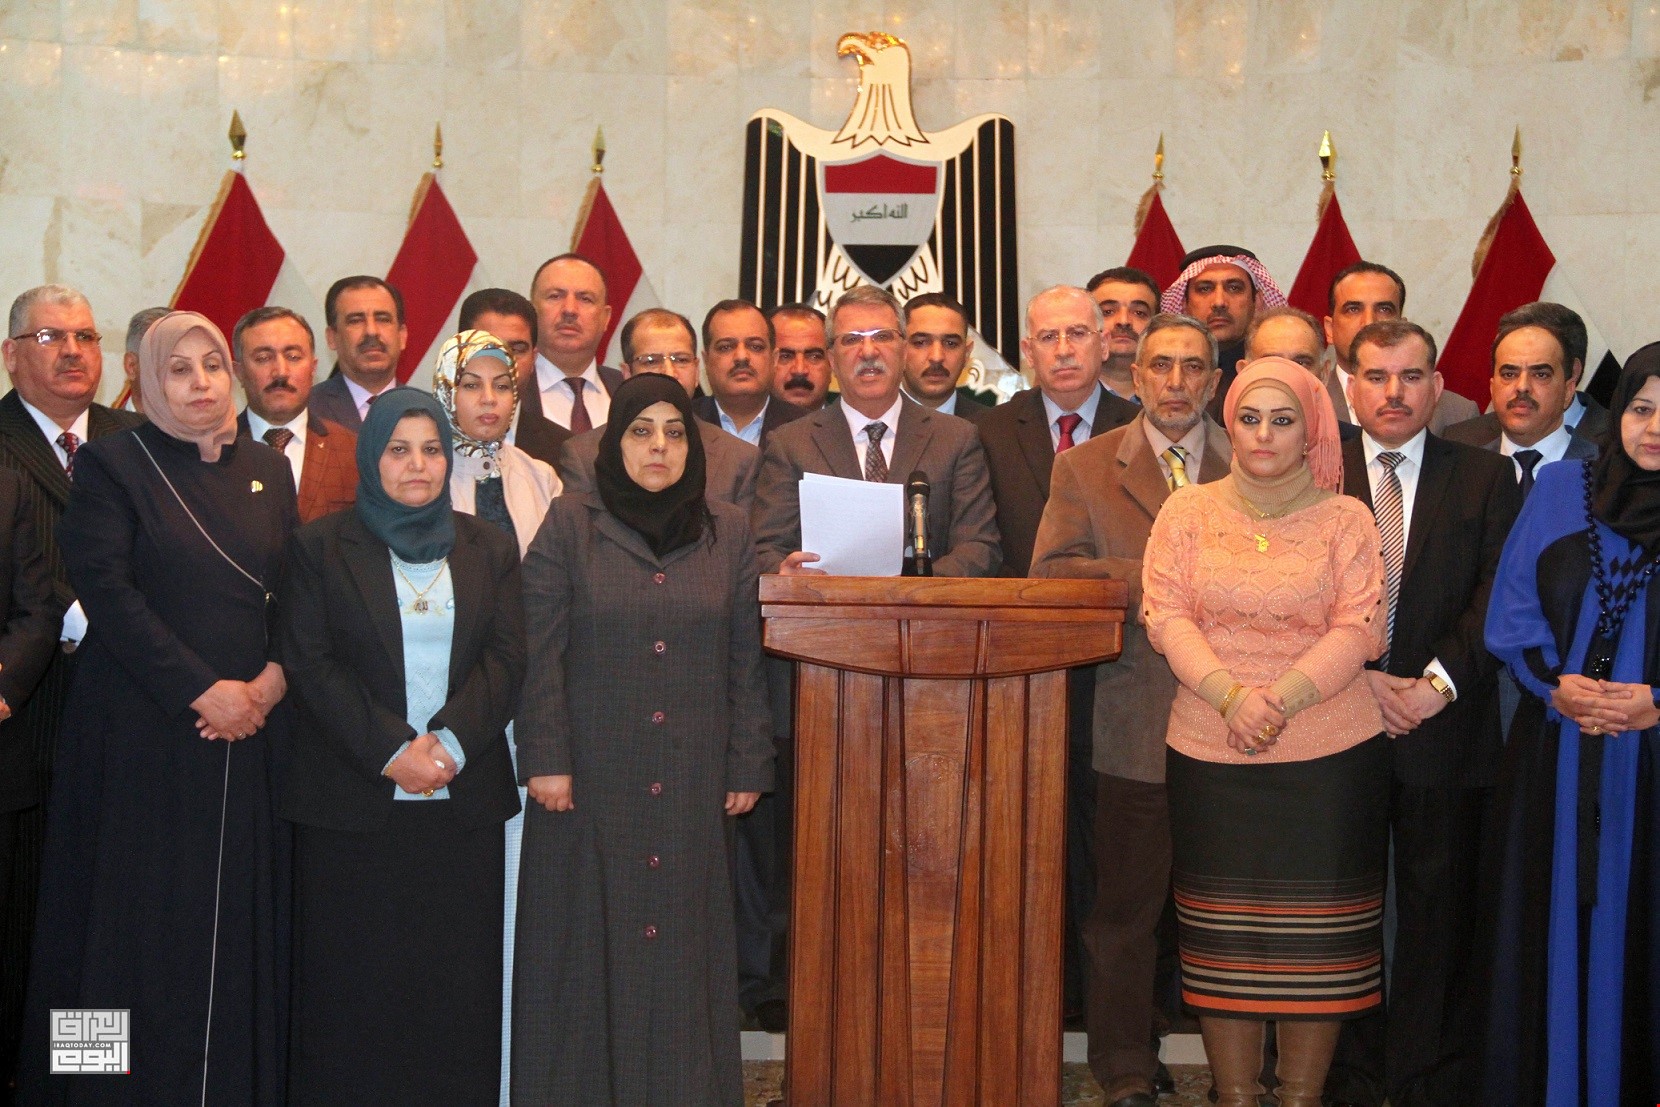 احتضان تركيا لشخصيات سنية عراقية يثير حنق بغداد